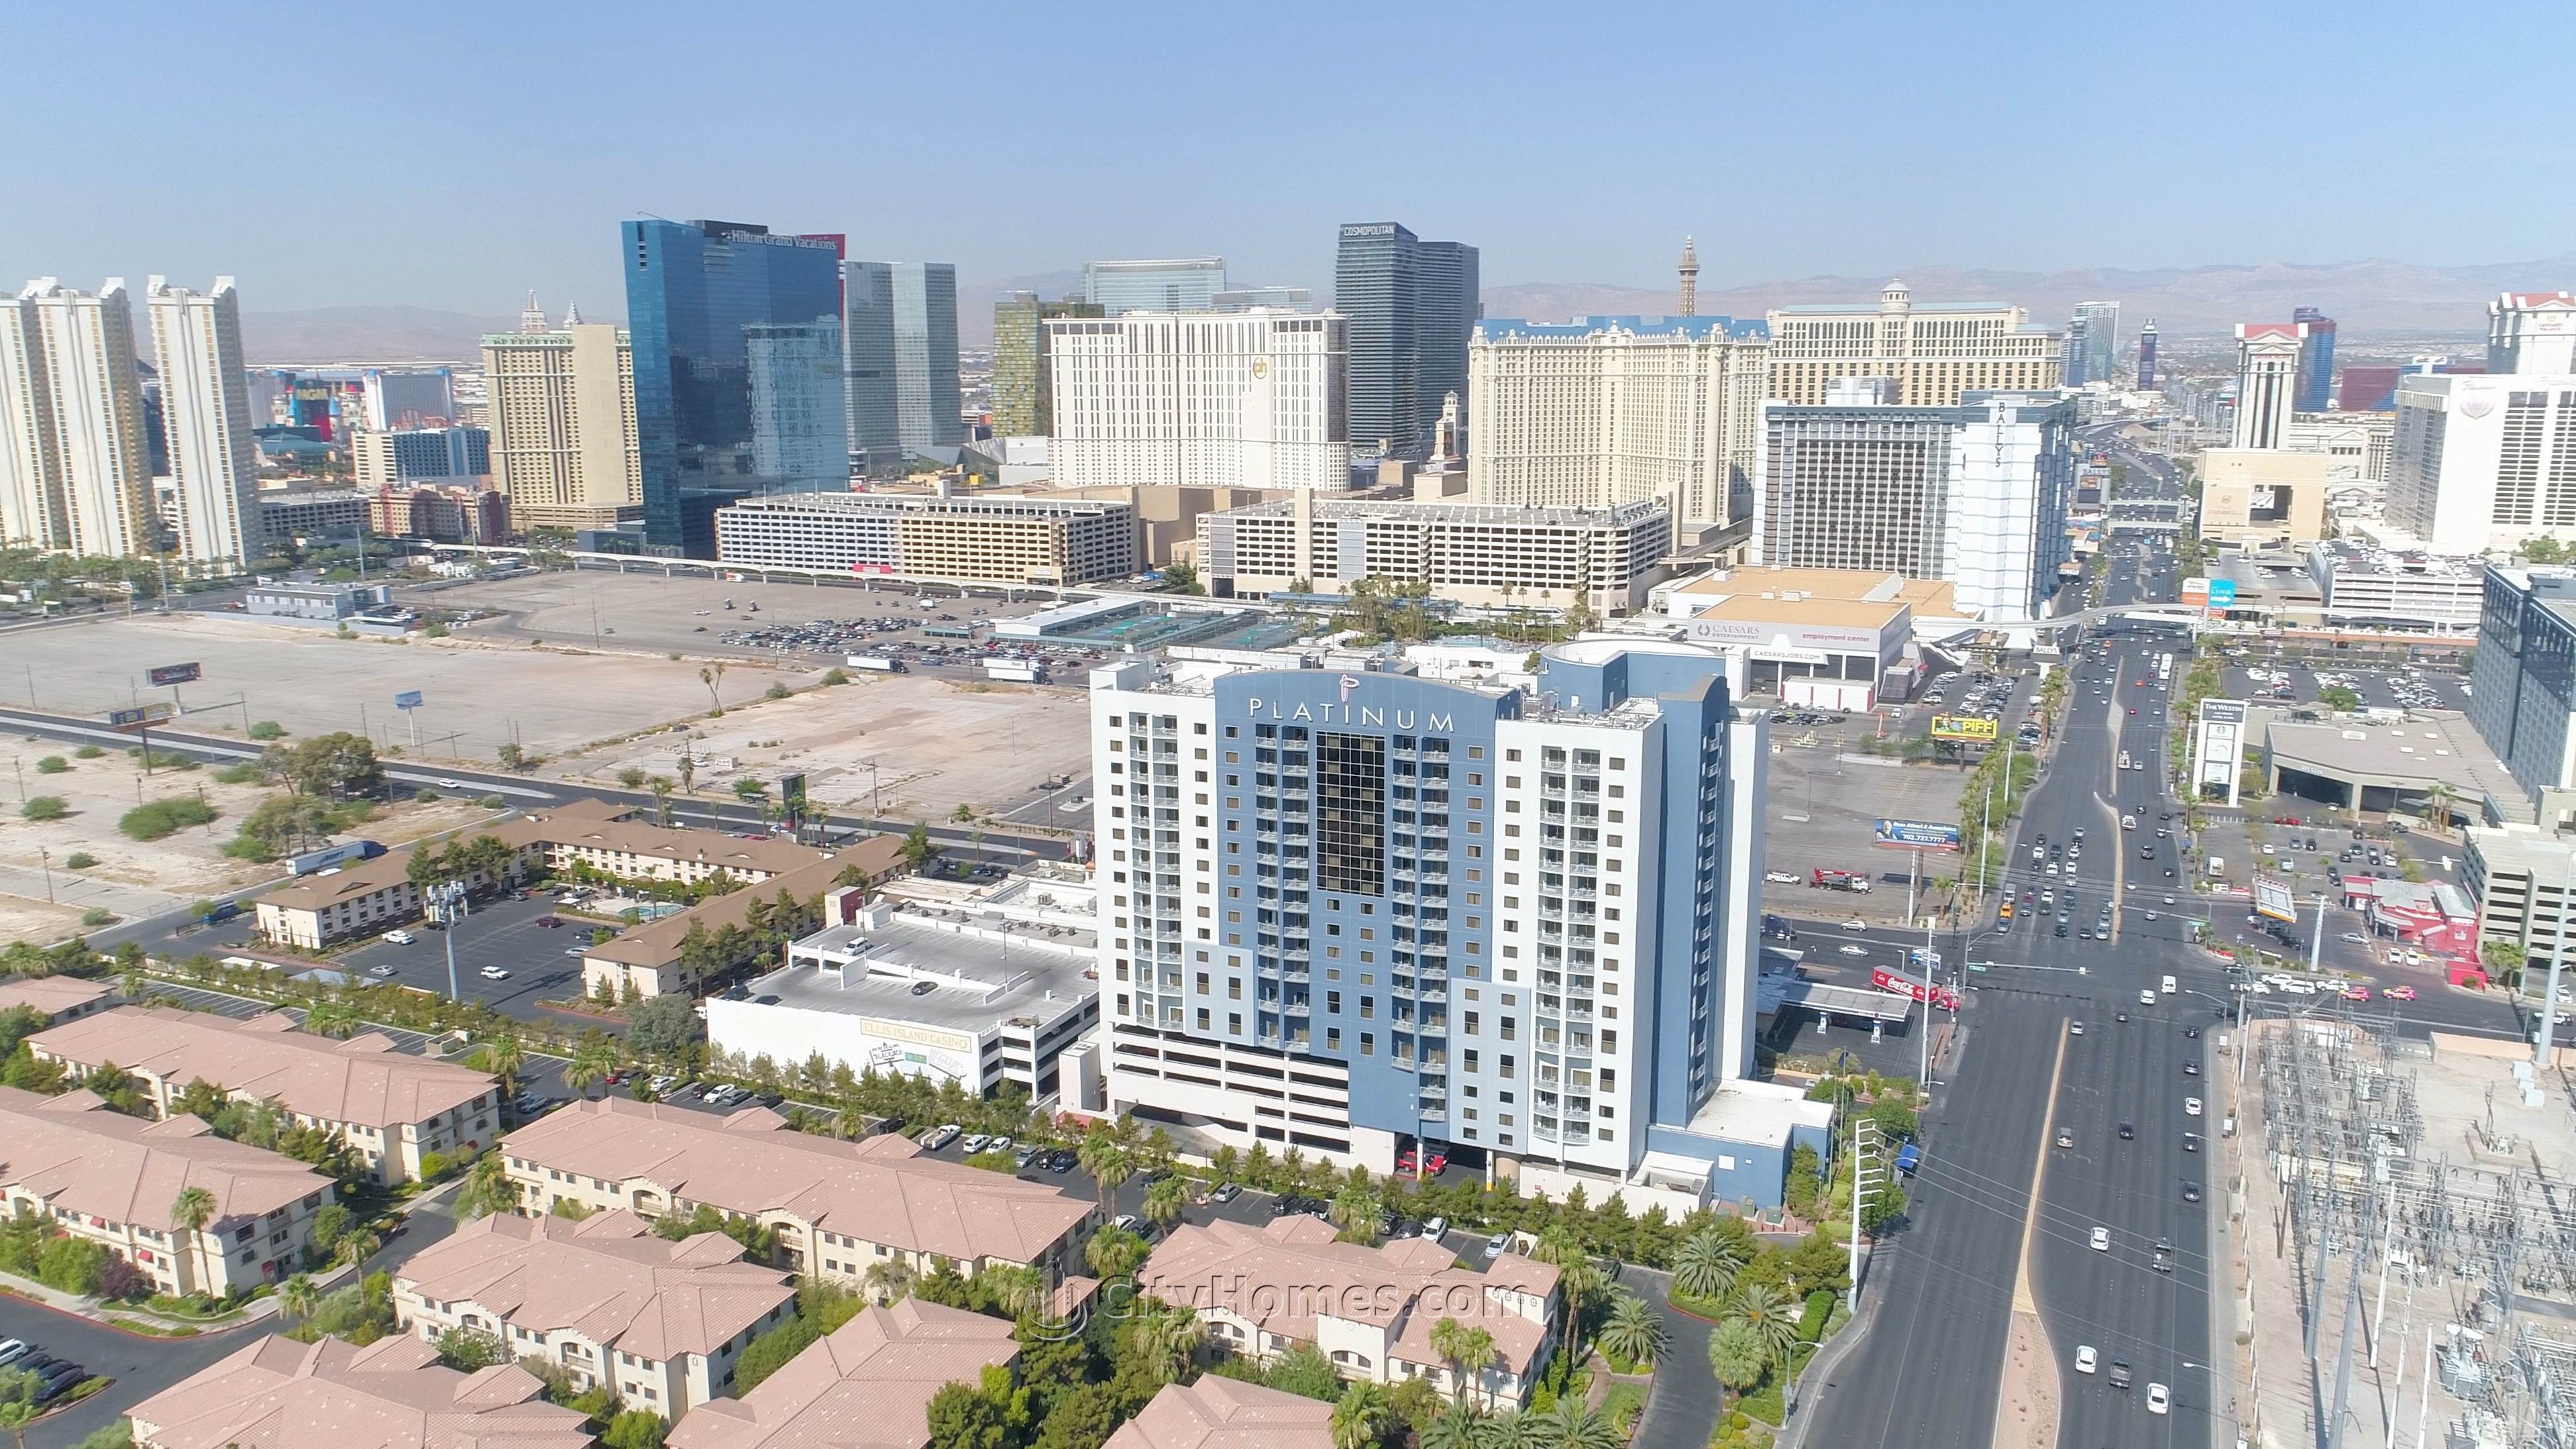 2. Platinum Resort xây dựng tại 211 E Flamingo Road, Paradise, Las Vegas, NV 89169